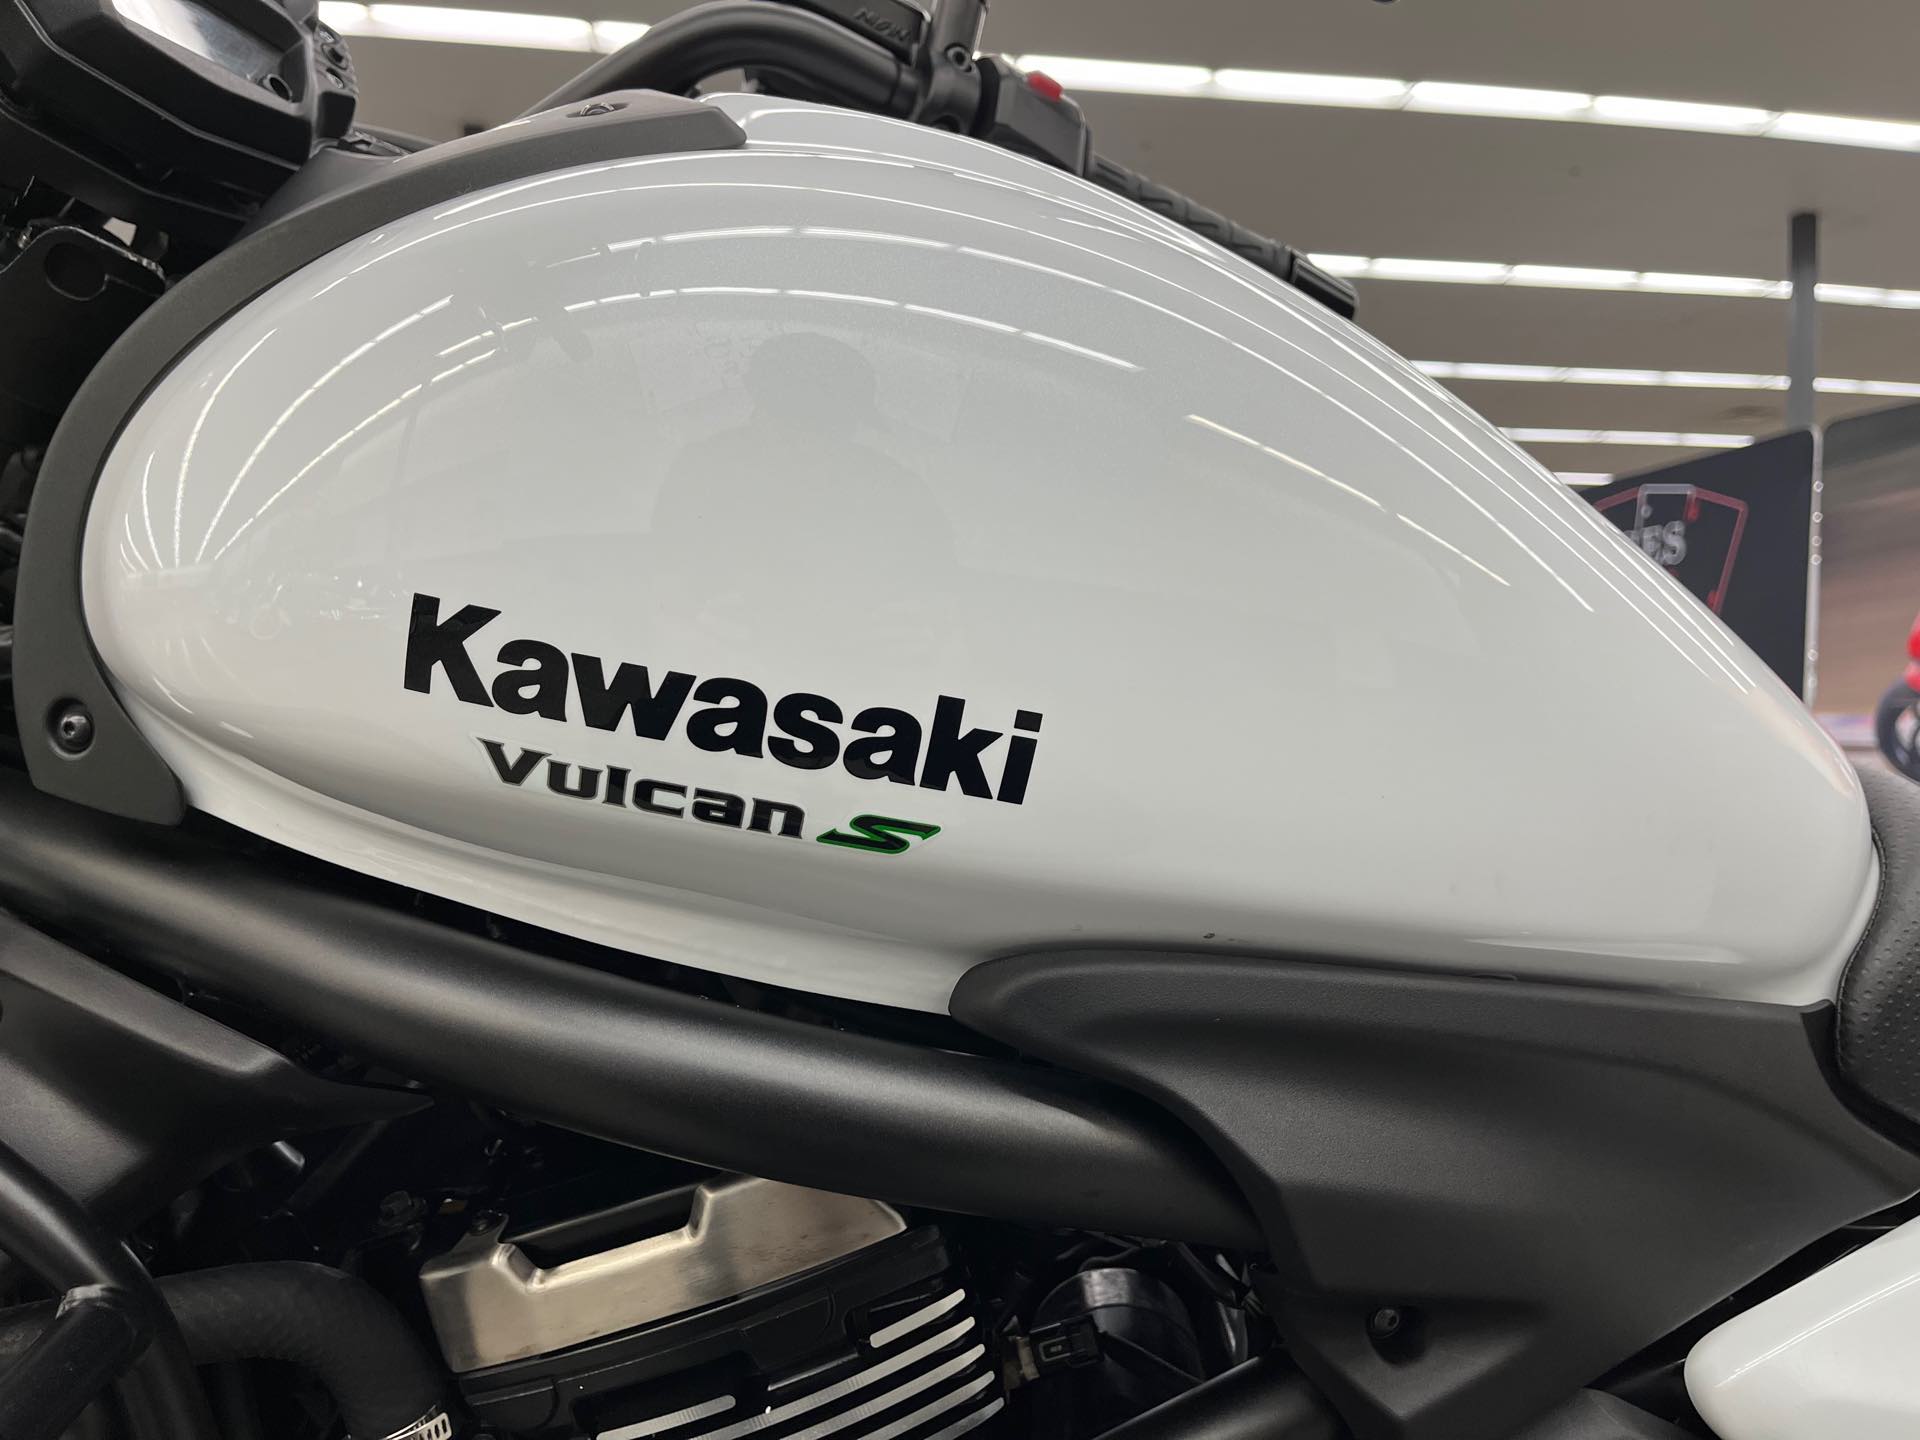 2015 Kawasaki Vulcan S Base at Aces Motorcycles - Denver